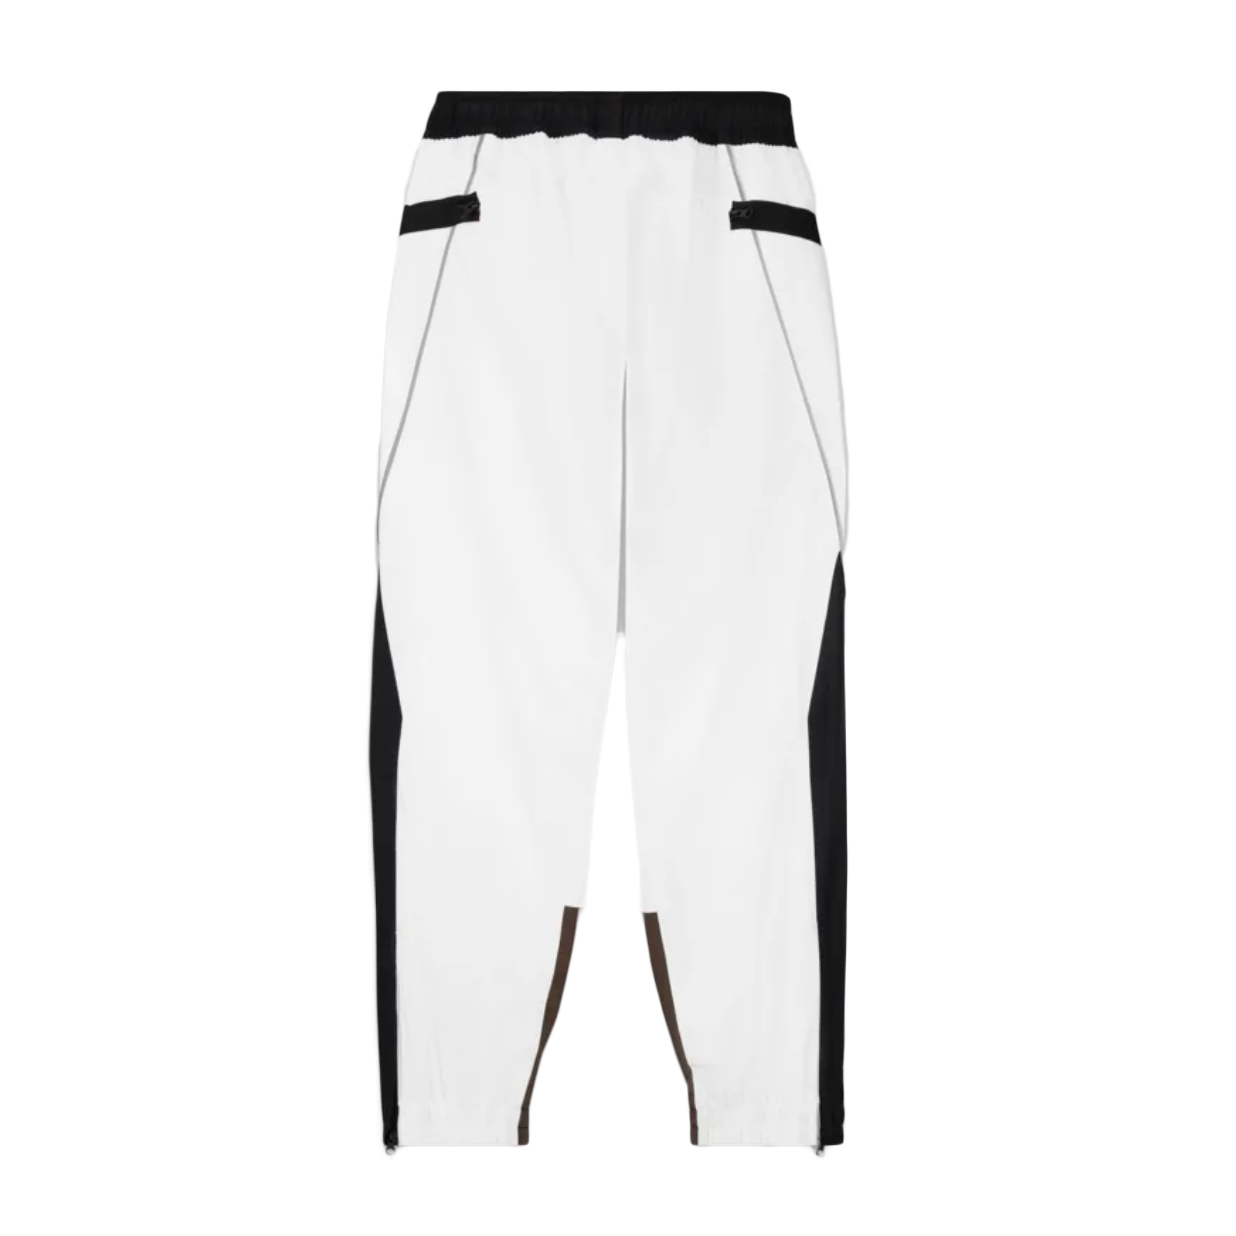 NikeLab x Acronym Woven Pants (Asia Sizing) White